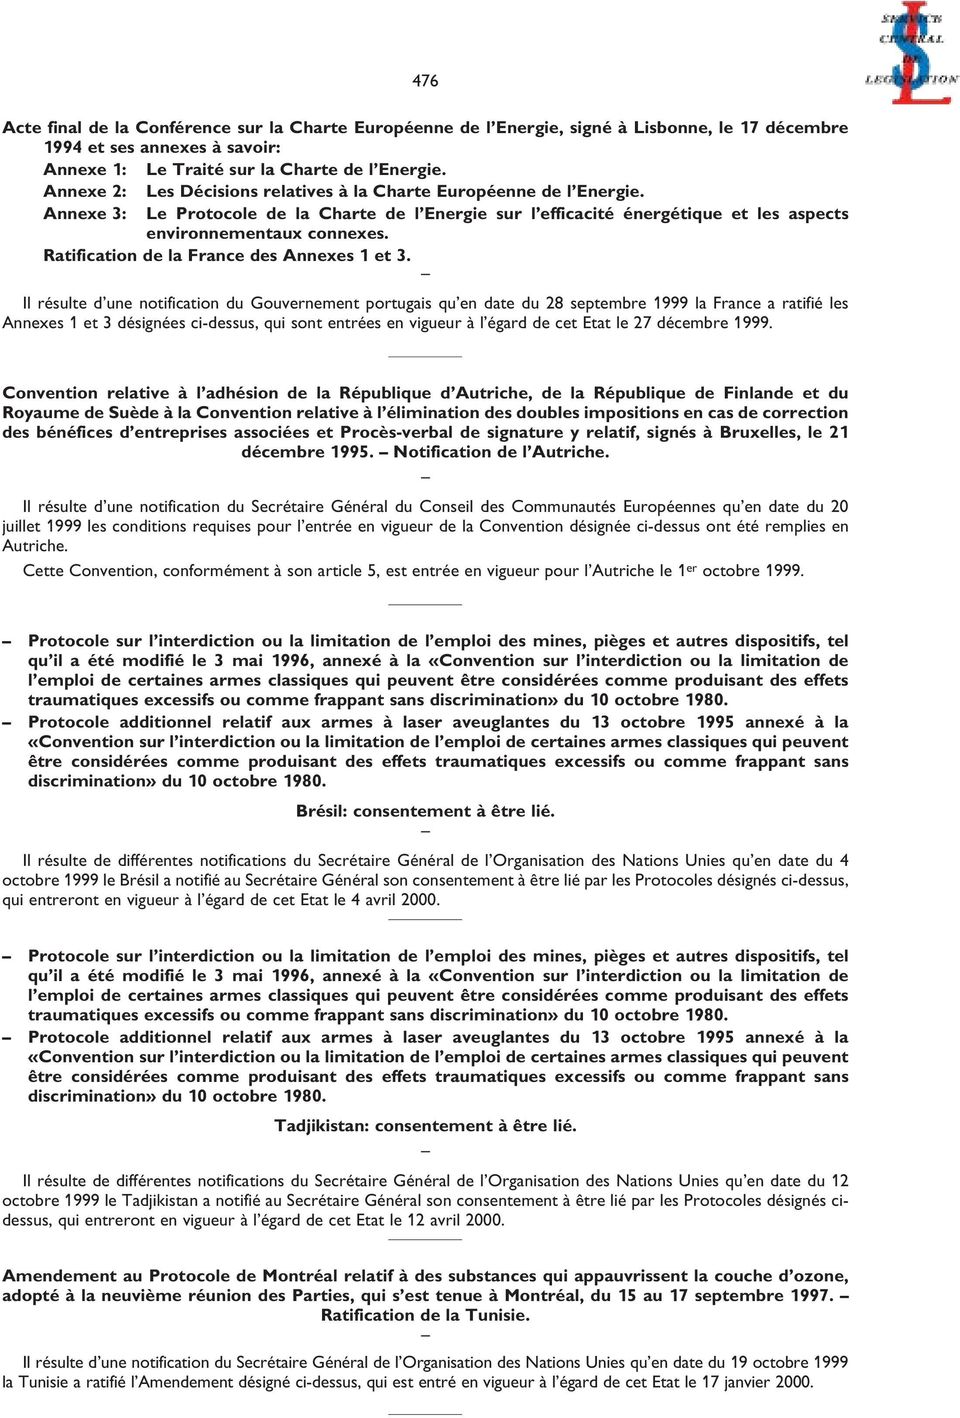 Ratification de la France des Annexes 1 et 3.